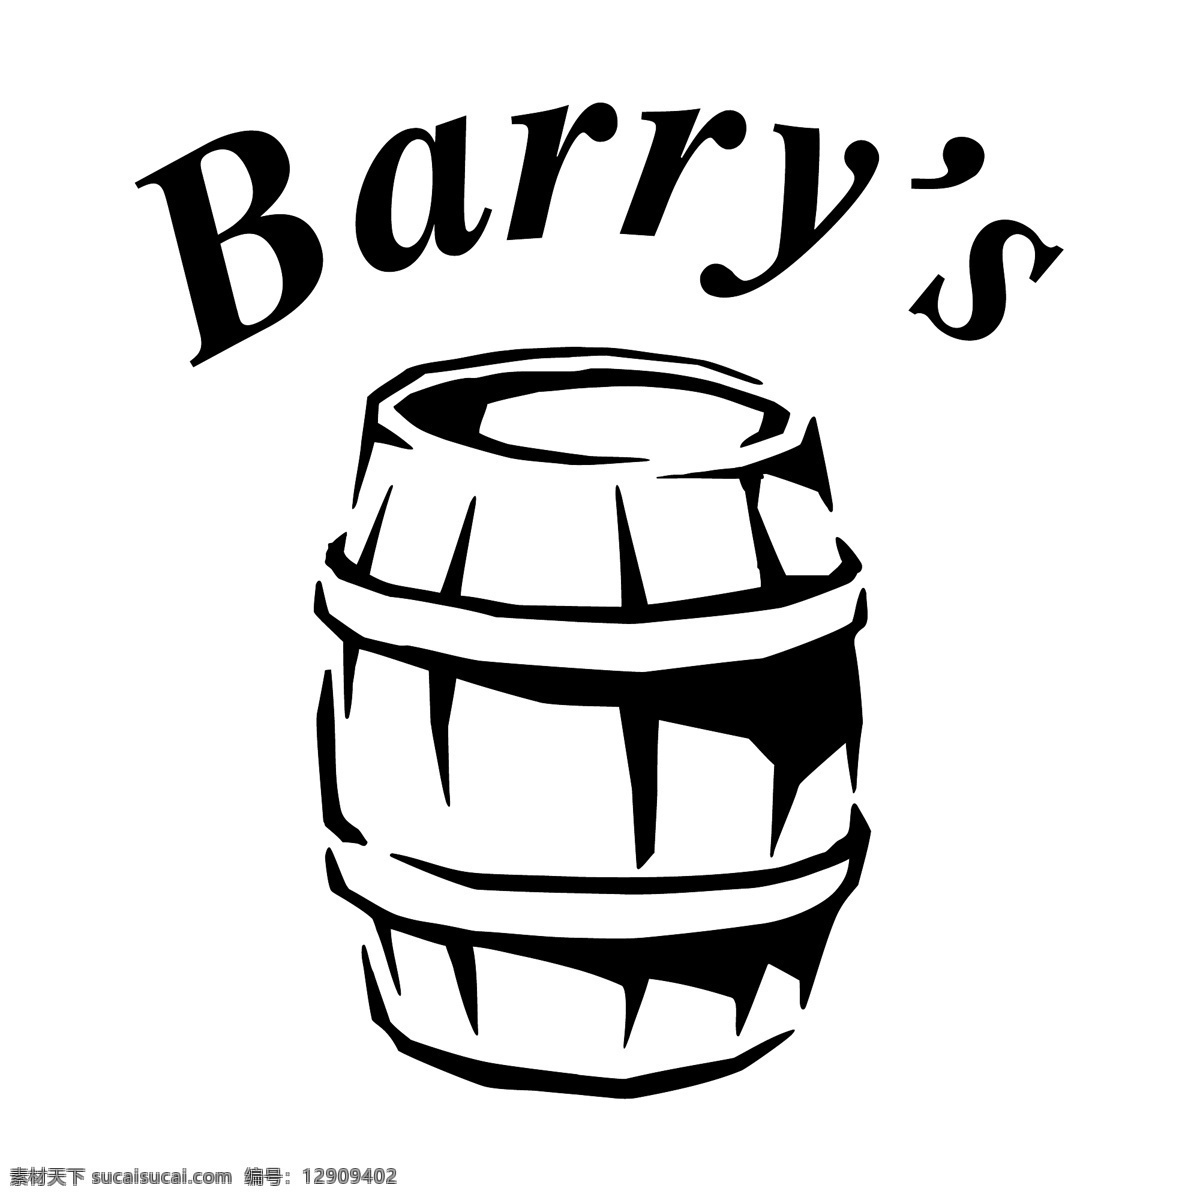 巴里 酒吧 自由 标志 标识 psd源文件 logo设计